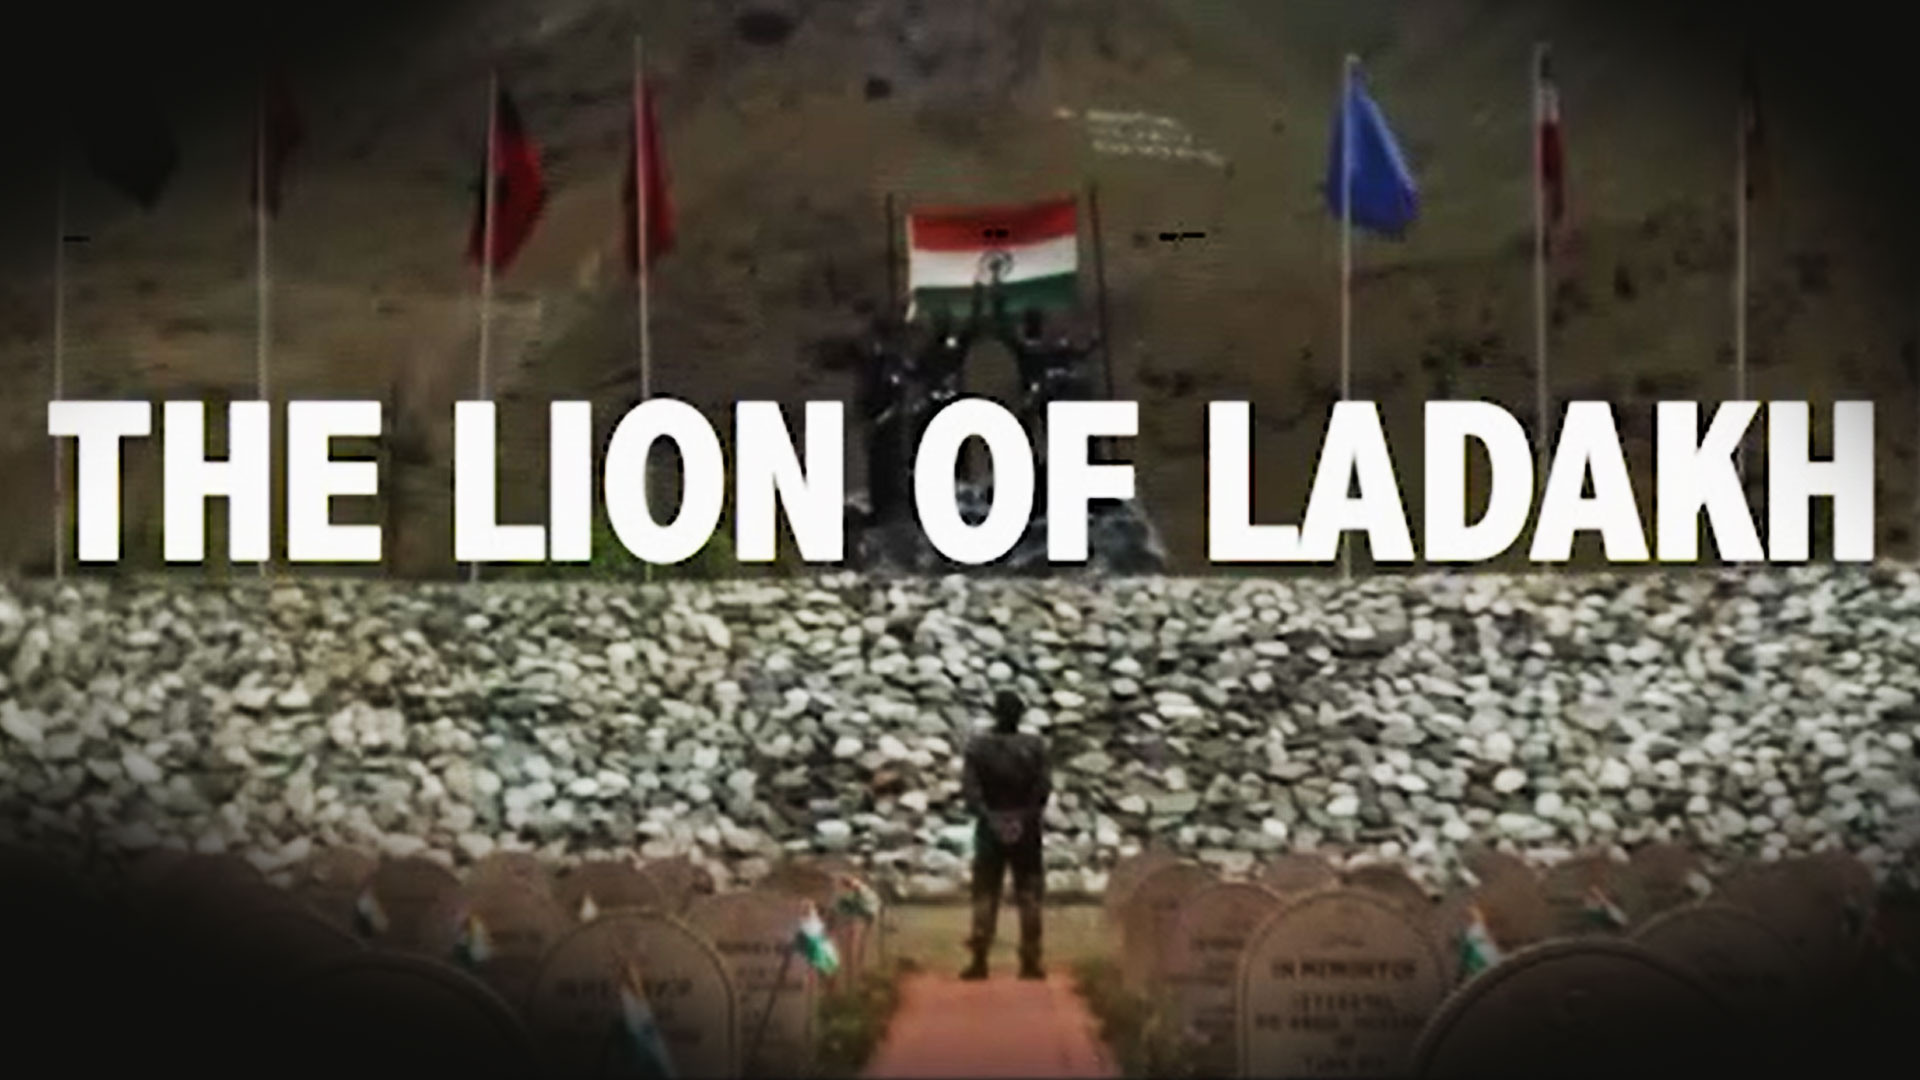 THE LION OF LADAKH